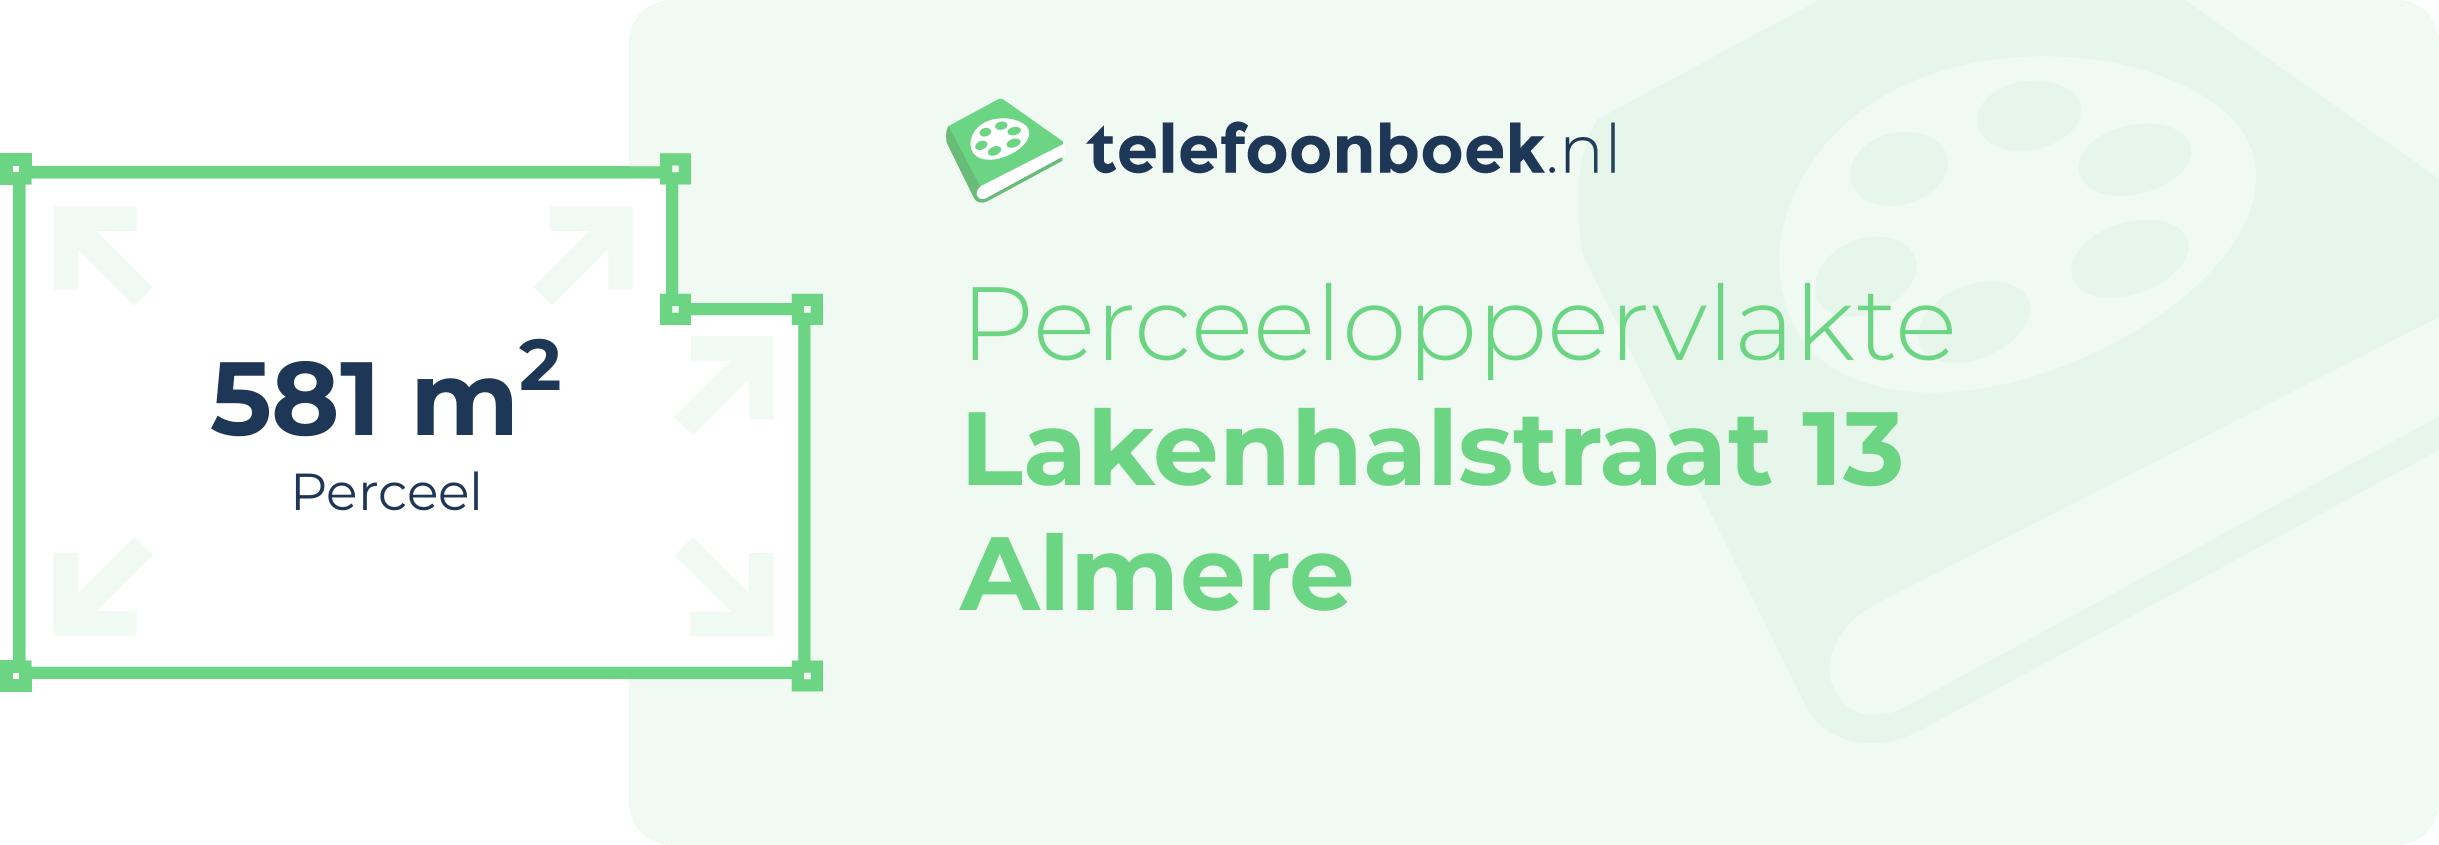 Perceeloppervlakte Lakenhalstraat 13 Almere